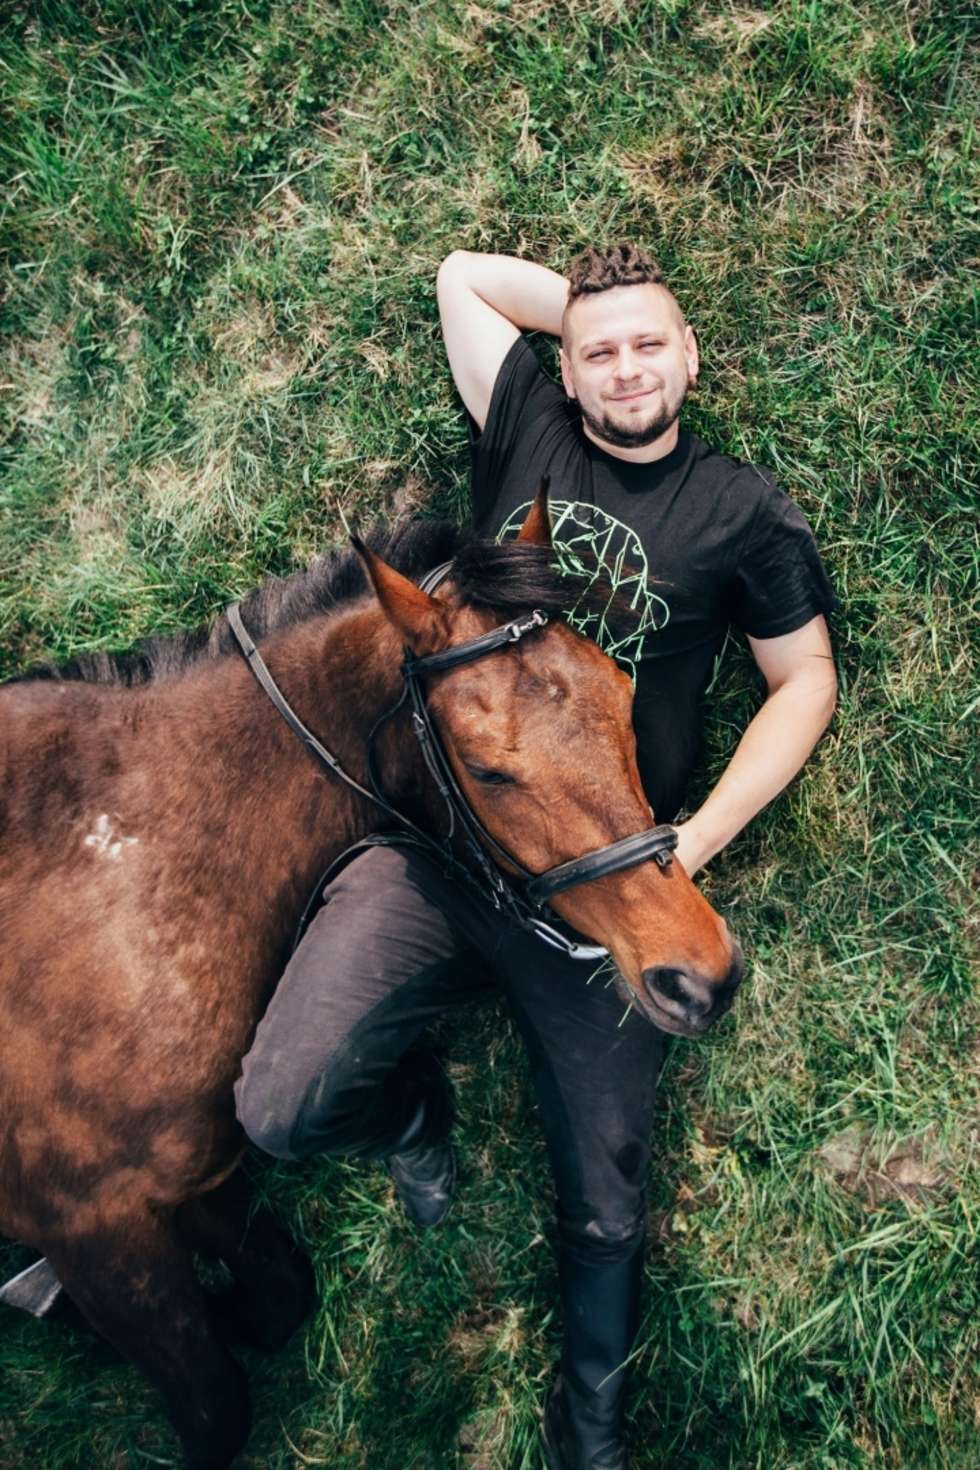  Paweł Jachymek i Wicher Trener koni. Sprawia, że Wicher robi to, czego koń robić nie powinien.